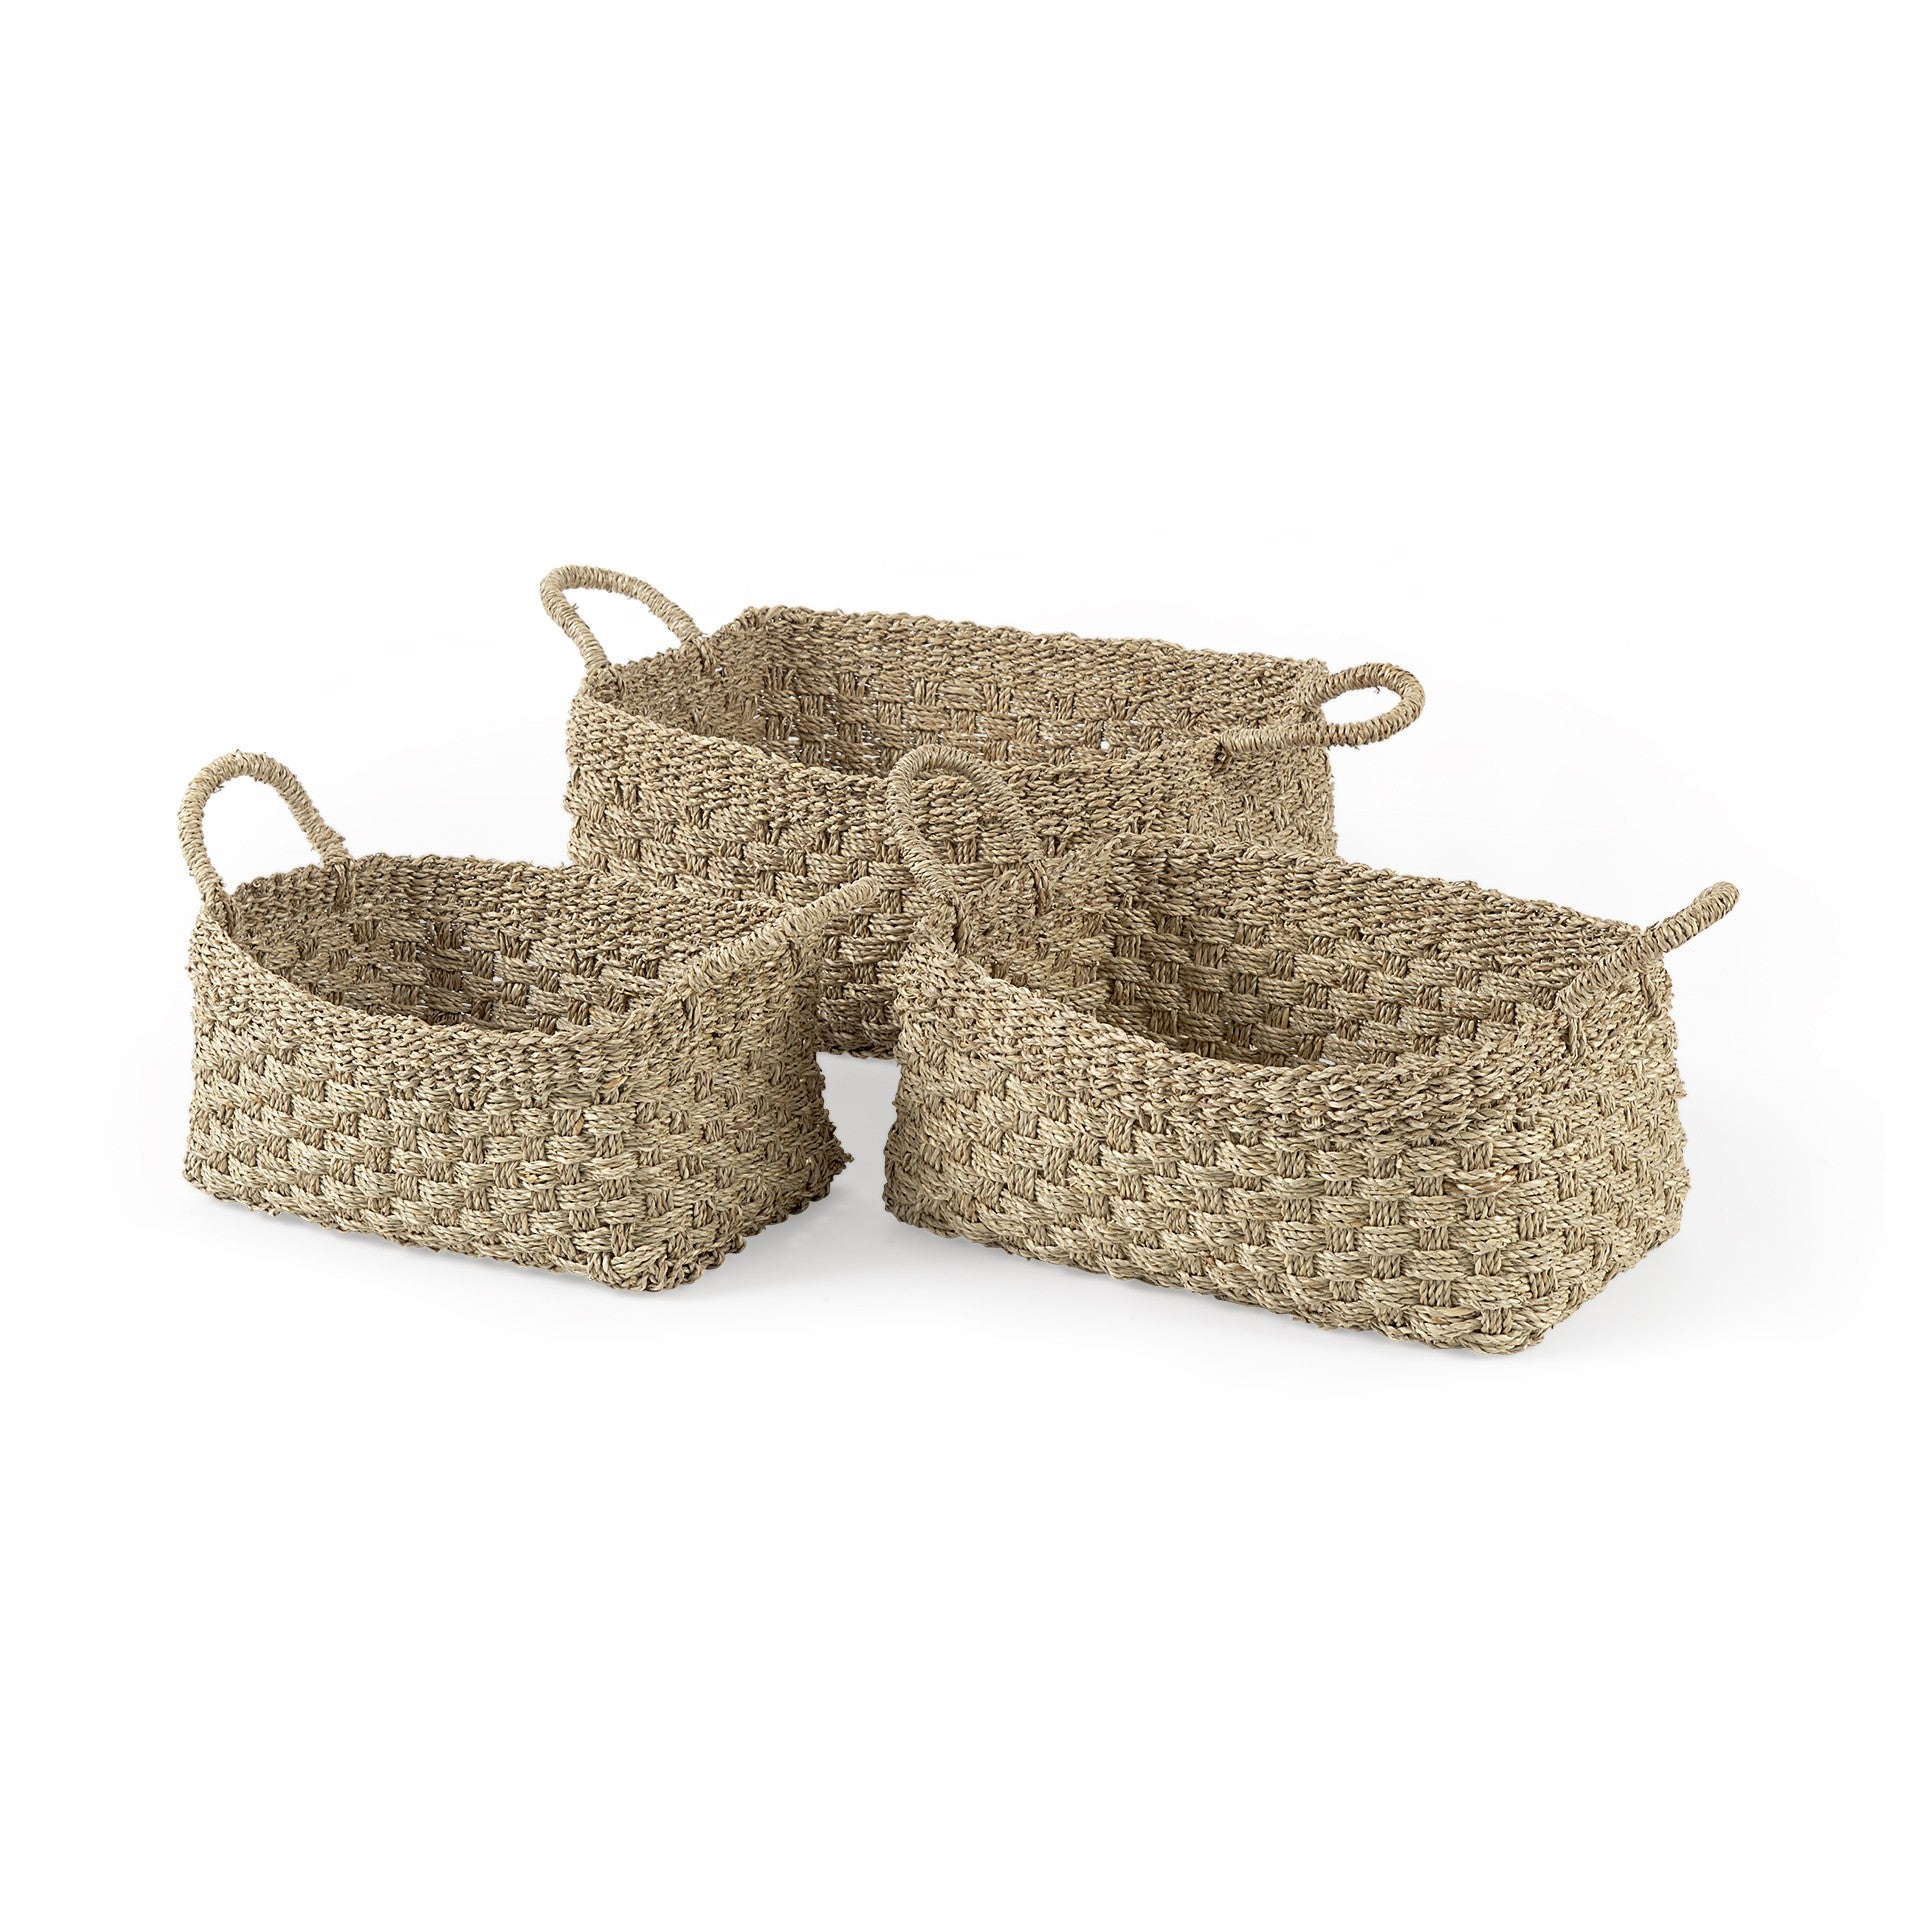 Set Of Three Weaved Wicker Storage Baskets